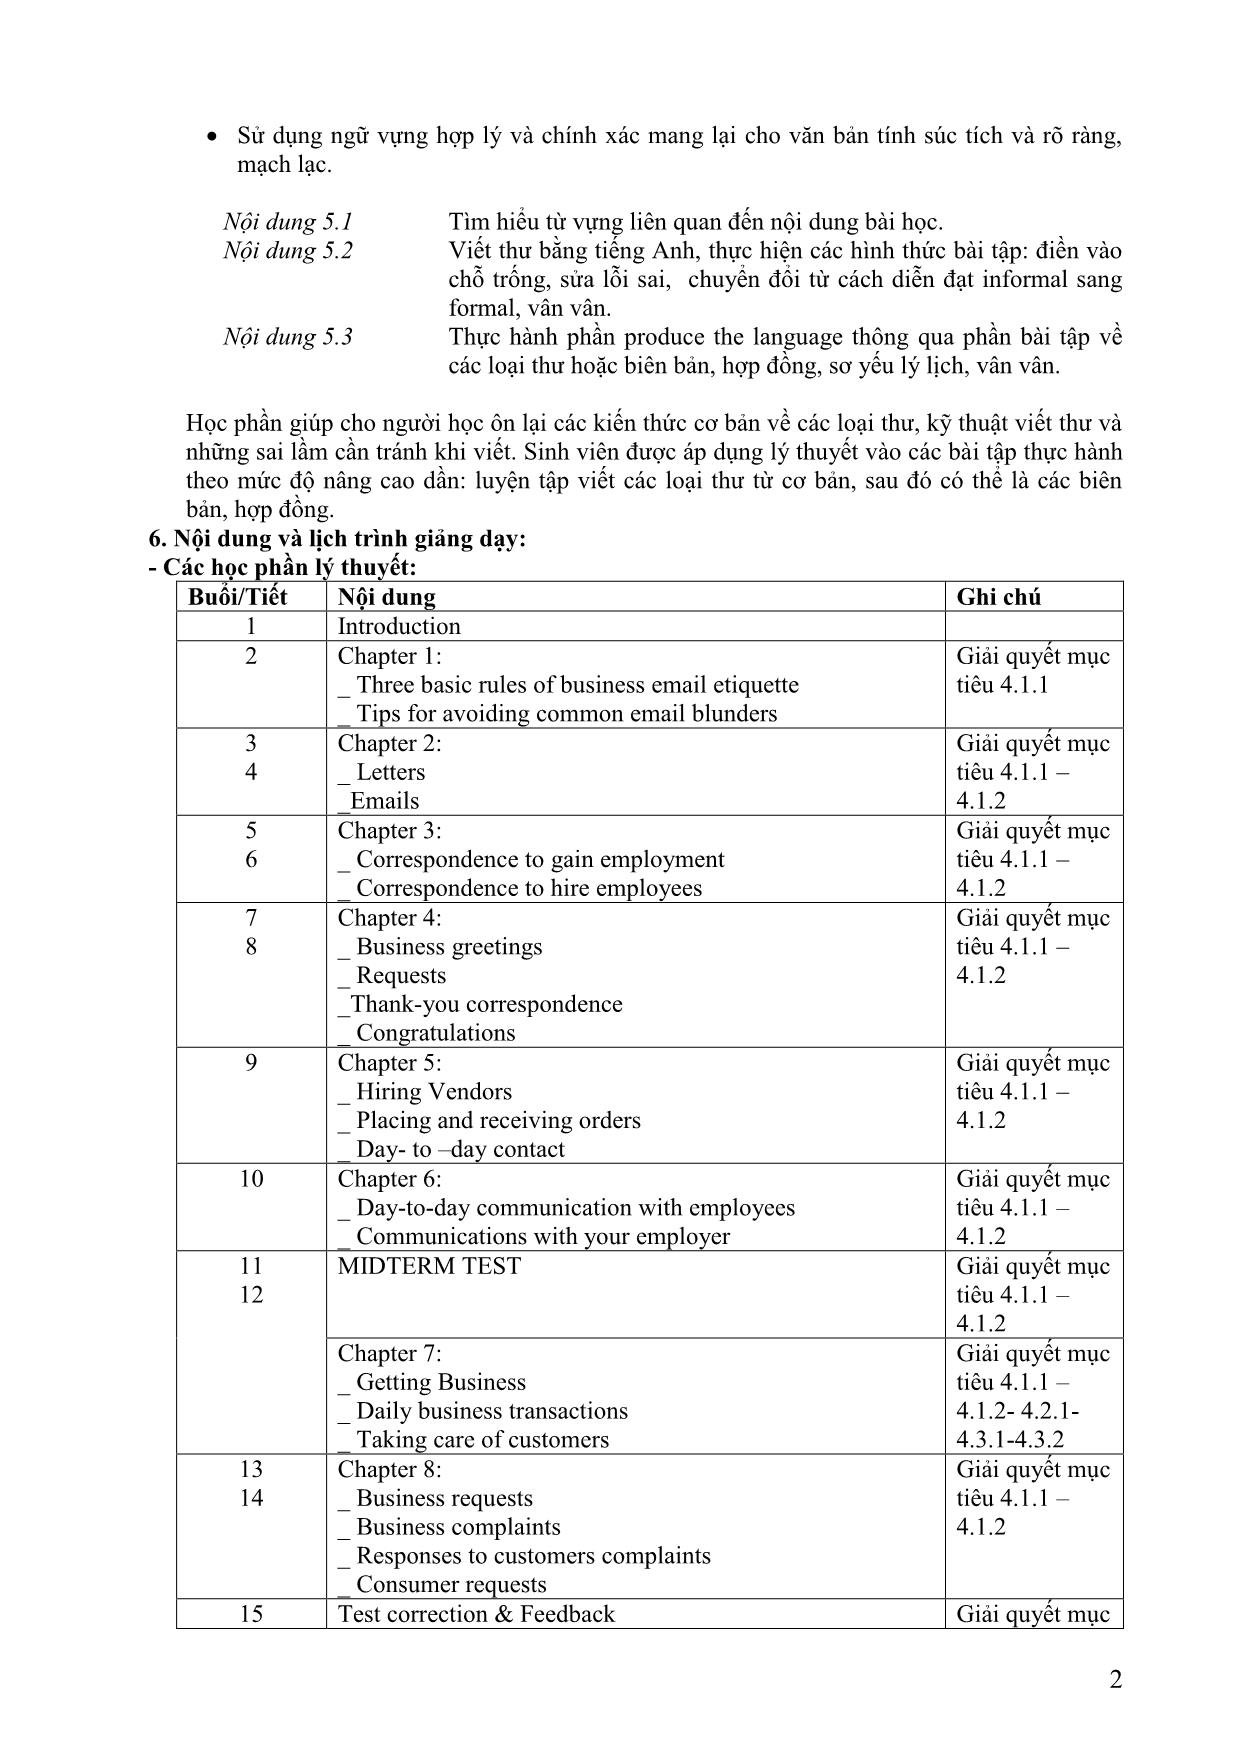 Đề cương chi tiết học phần Viết tiếng Anh 4 (Writing 4) trang 2